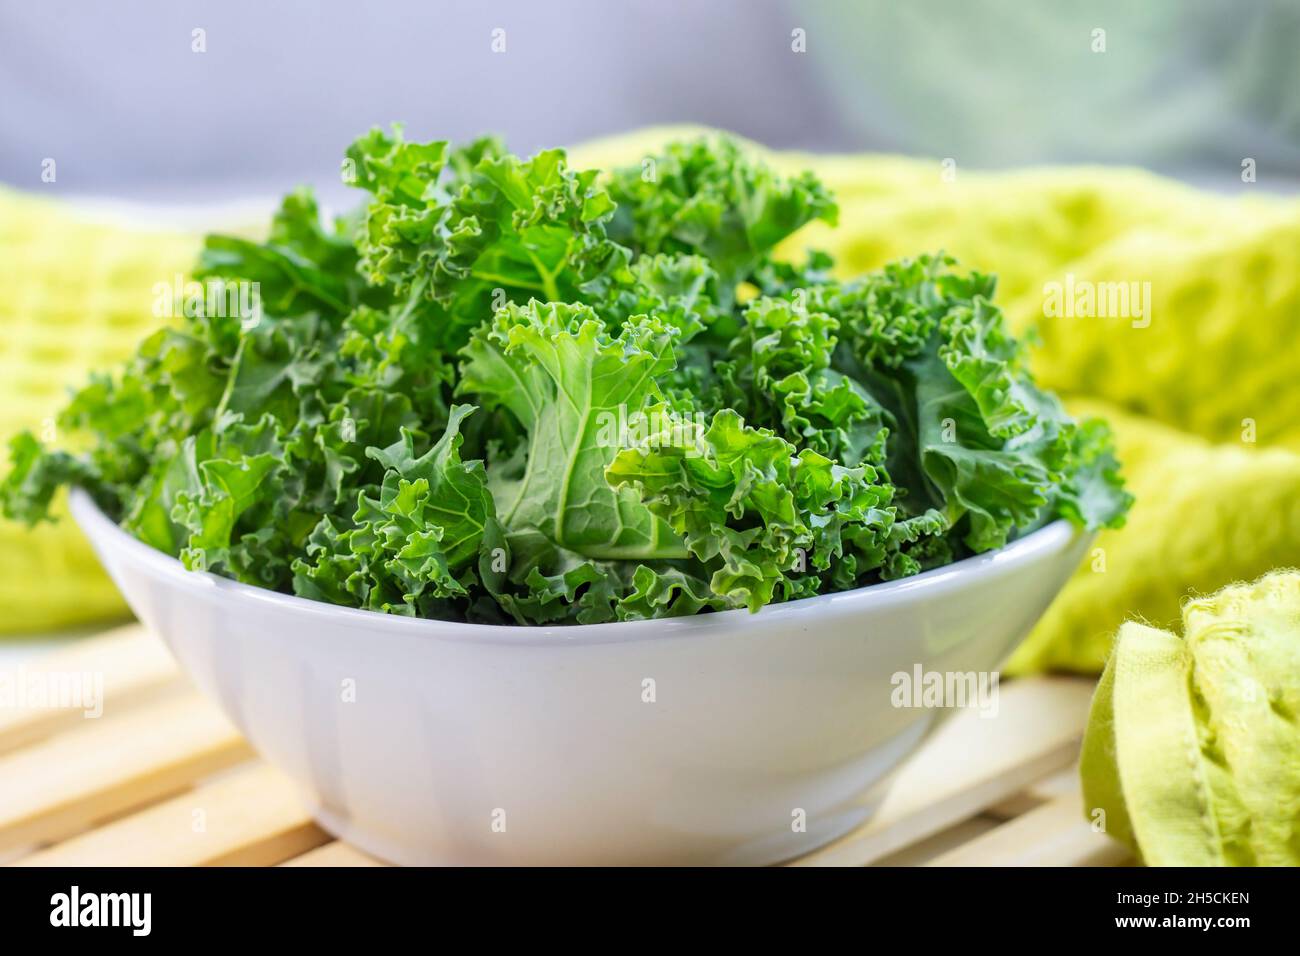 Cavolo fresco verde riccio o insalata di kale foglie tagliate nel recipiente su sfondo chiaro sul tavolo in cucina. Foto Stock